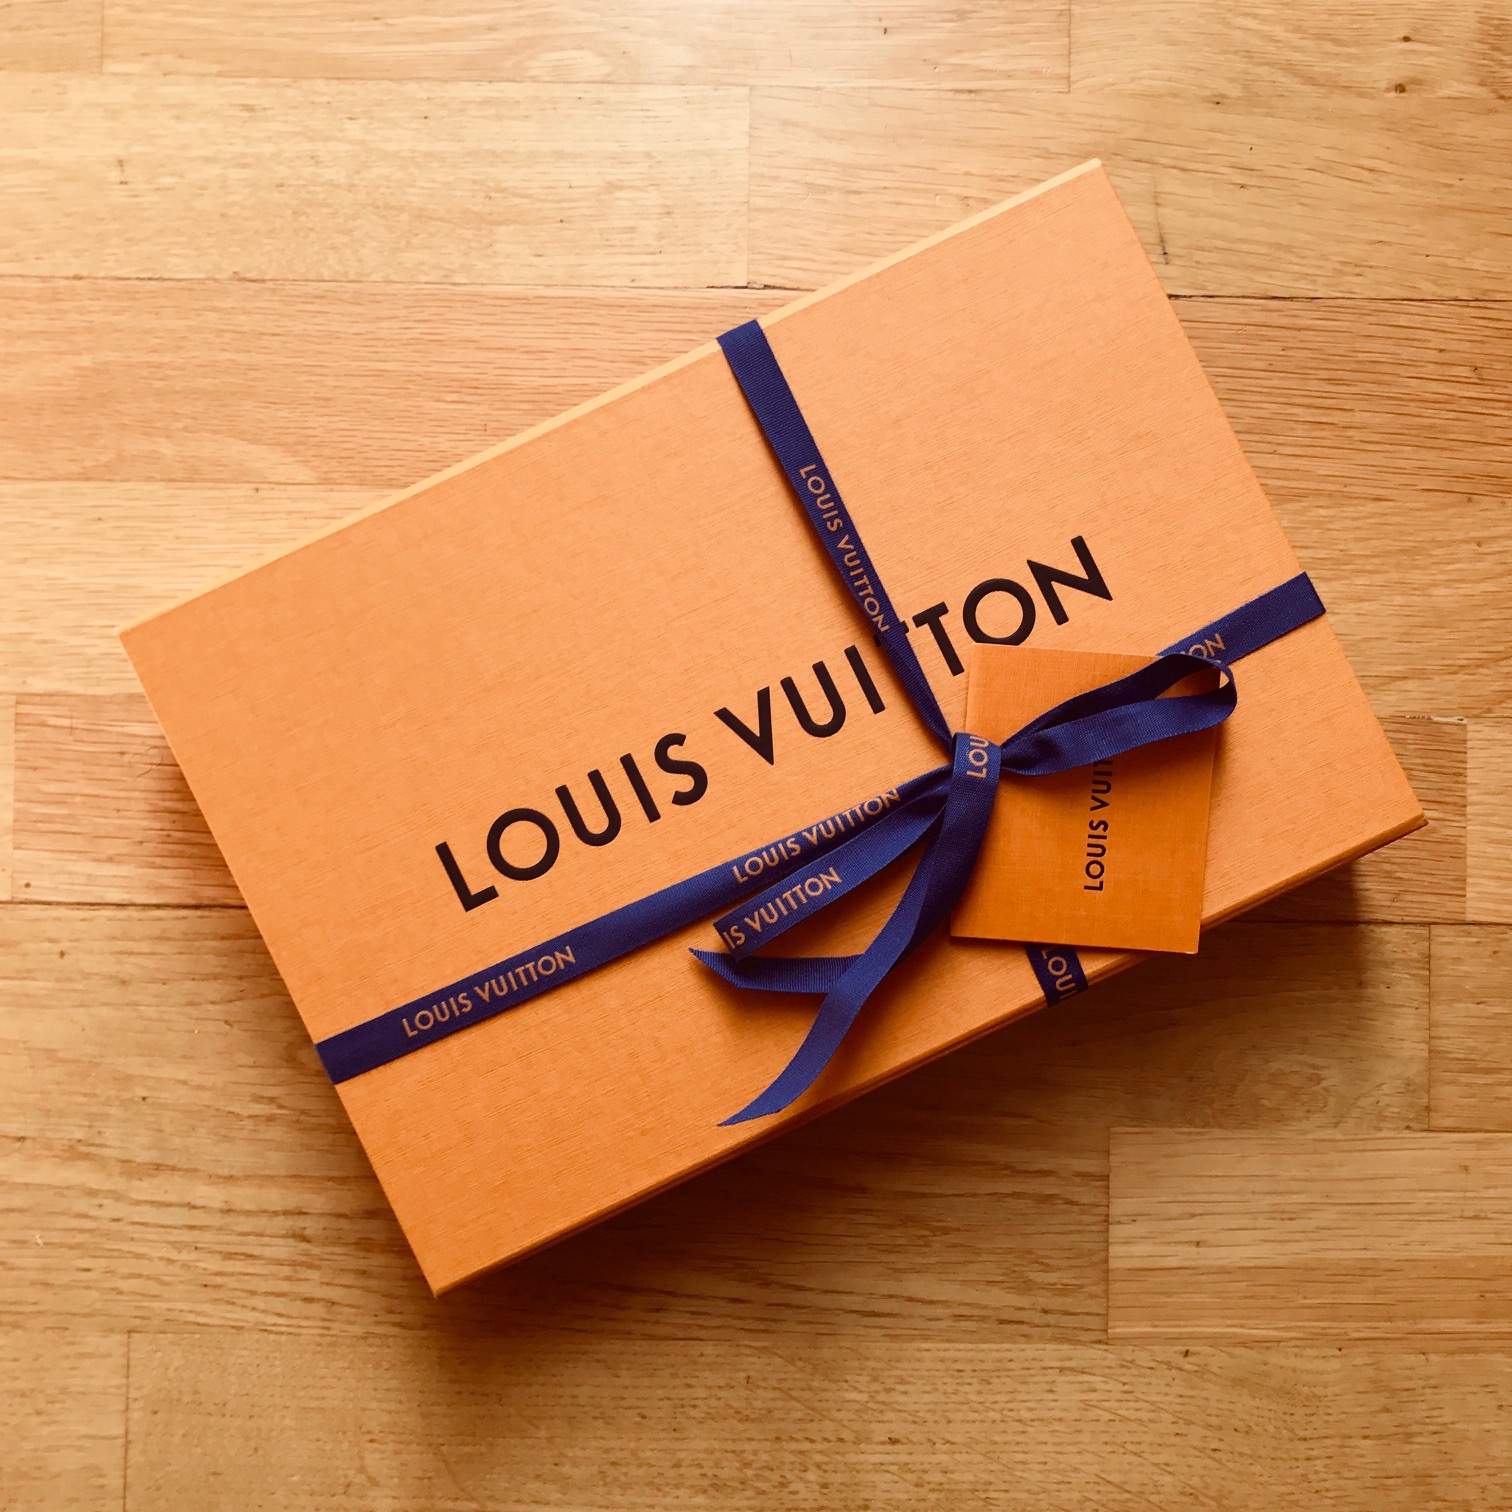 Louis Vuitton Lisbon Guide